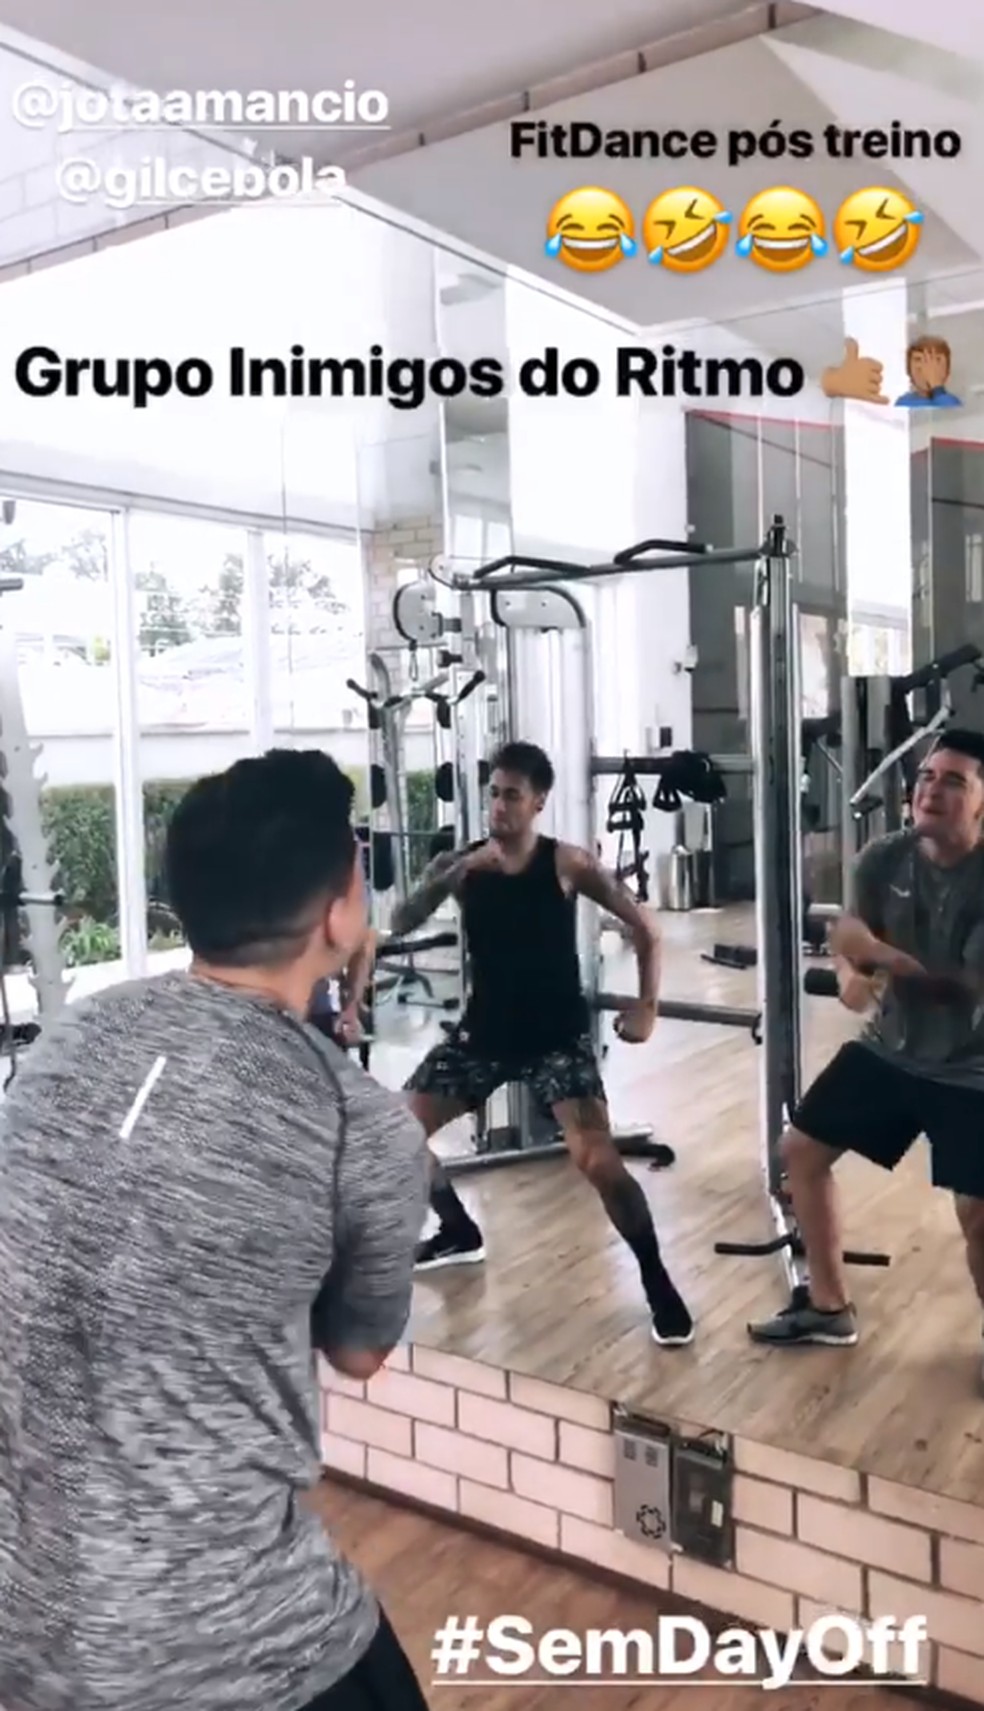 Neymar danÃ§ando ao lado dos parÃ§as (Foto: ReproduÃ§Ã£o/Instagram)